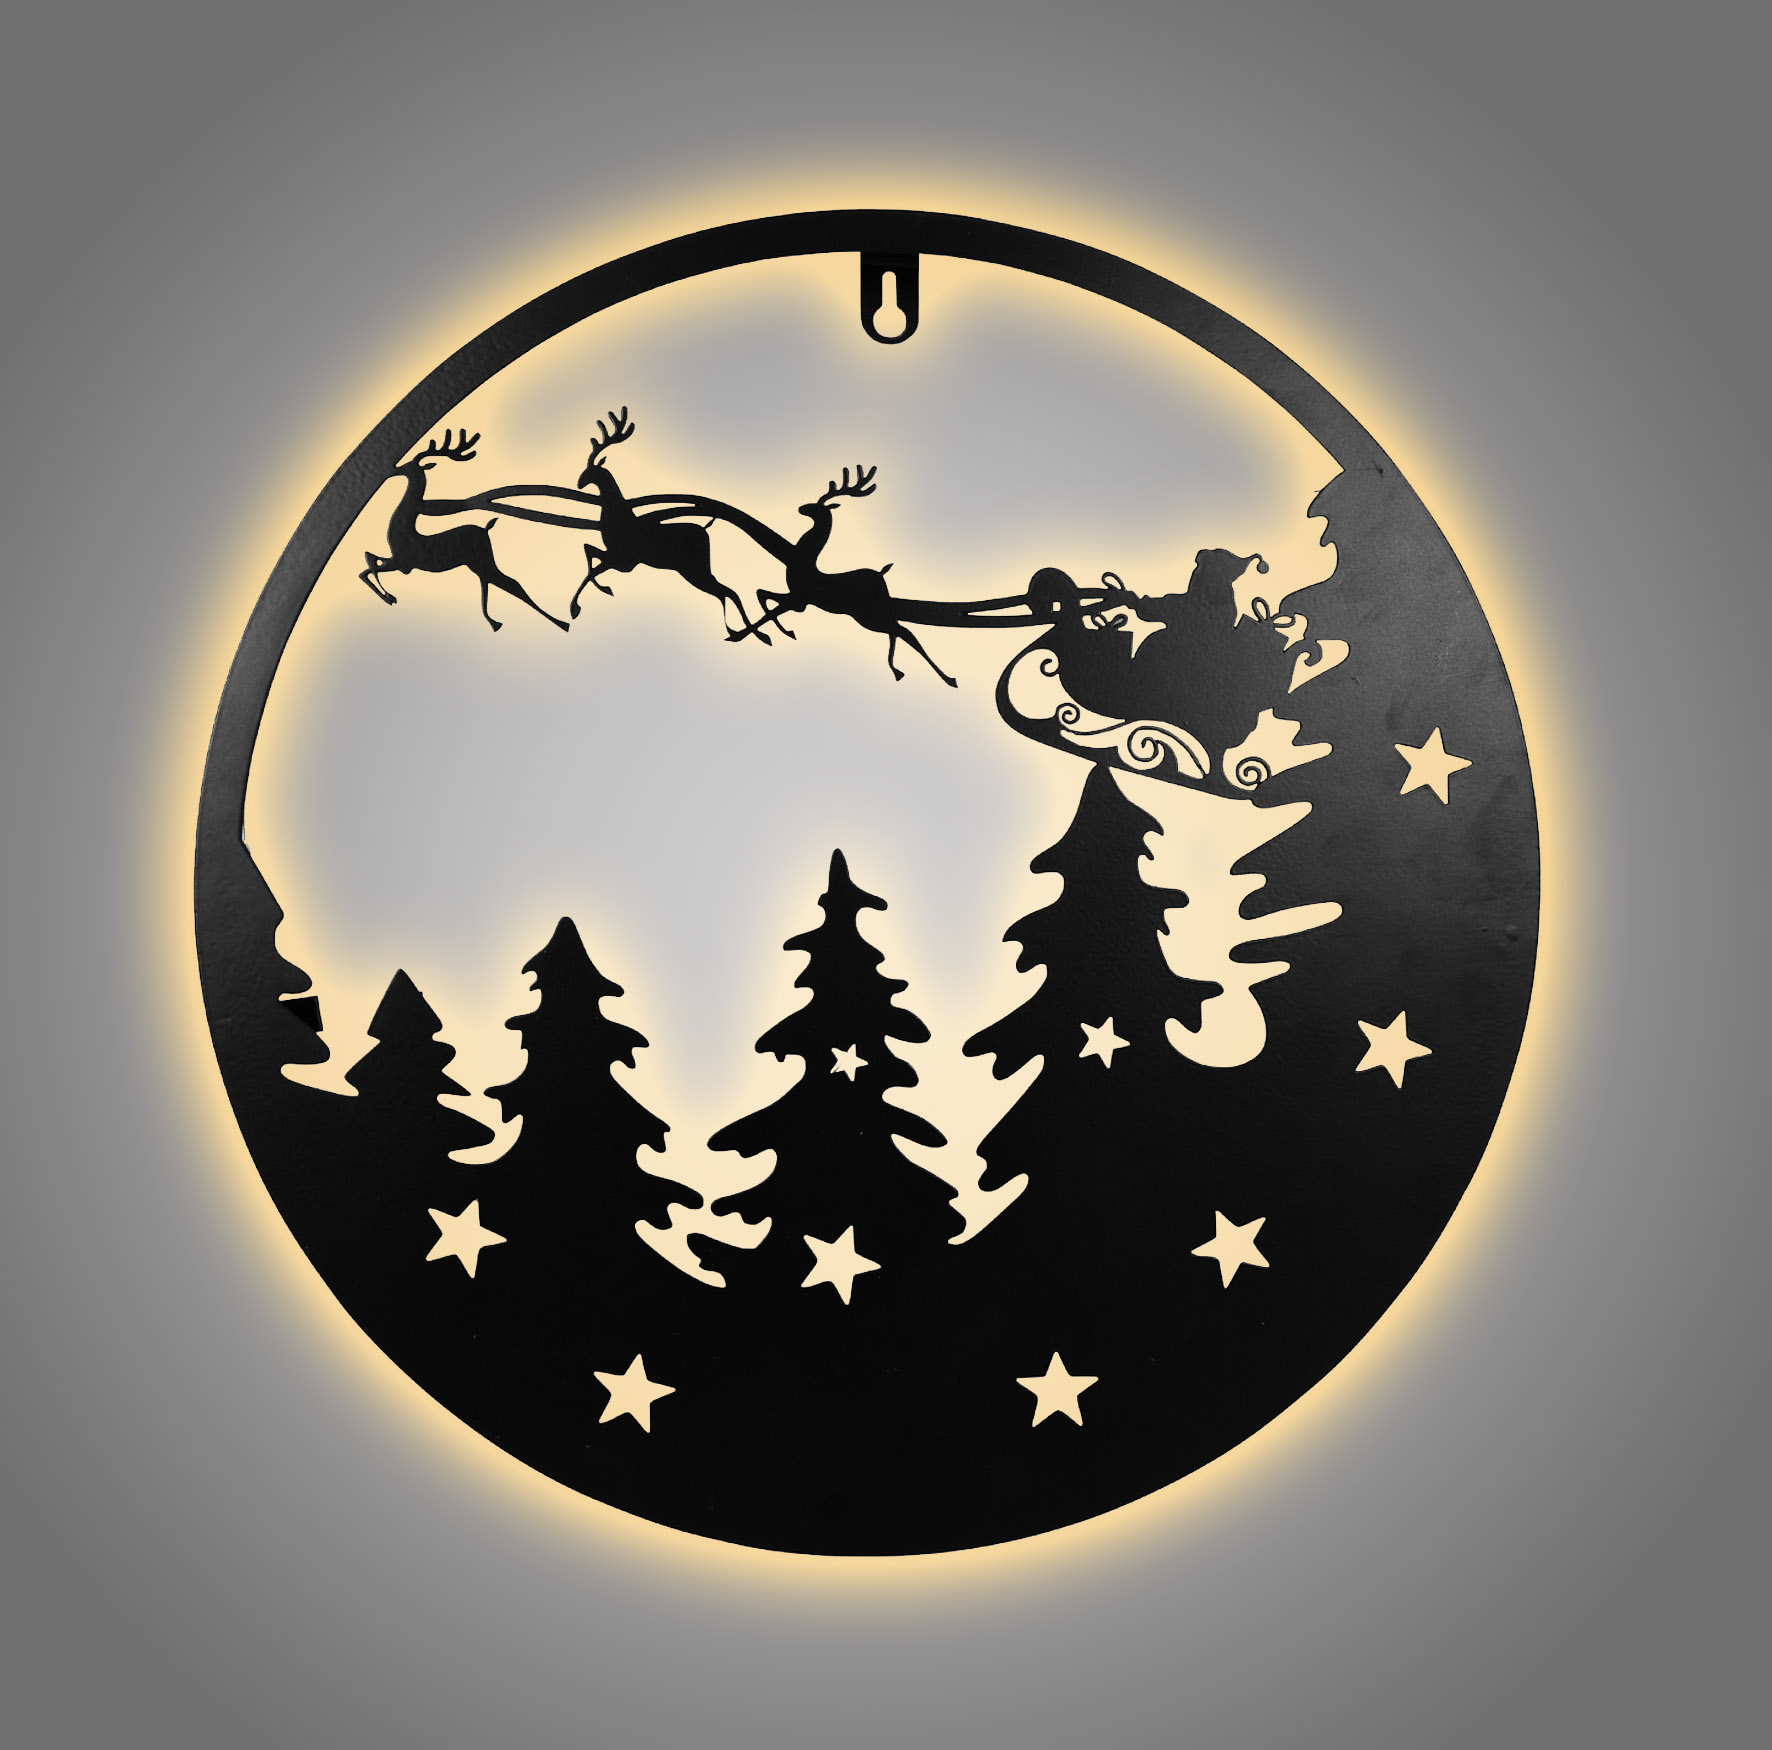 LED Metall Weihnachts Wandbild schwarz - 35 cm - Deko Silhouetten Bild zum Hängen warm weiß beleuchtet